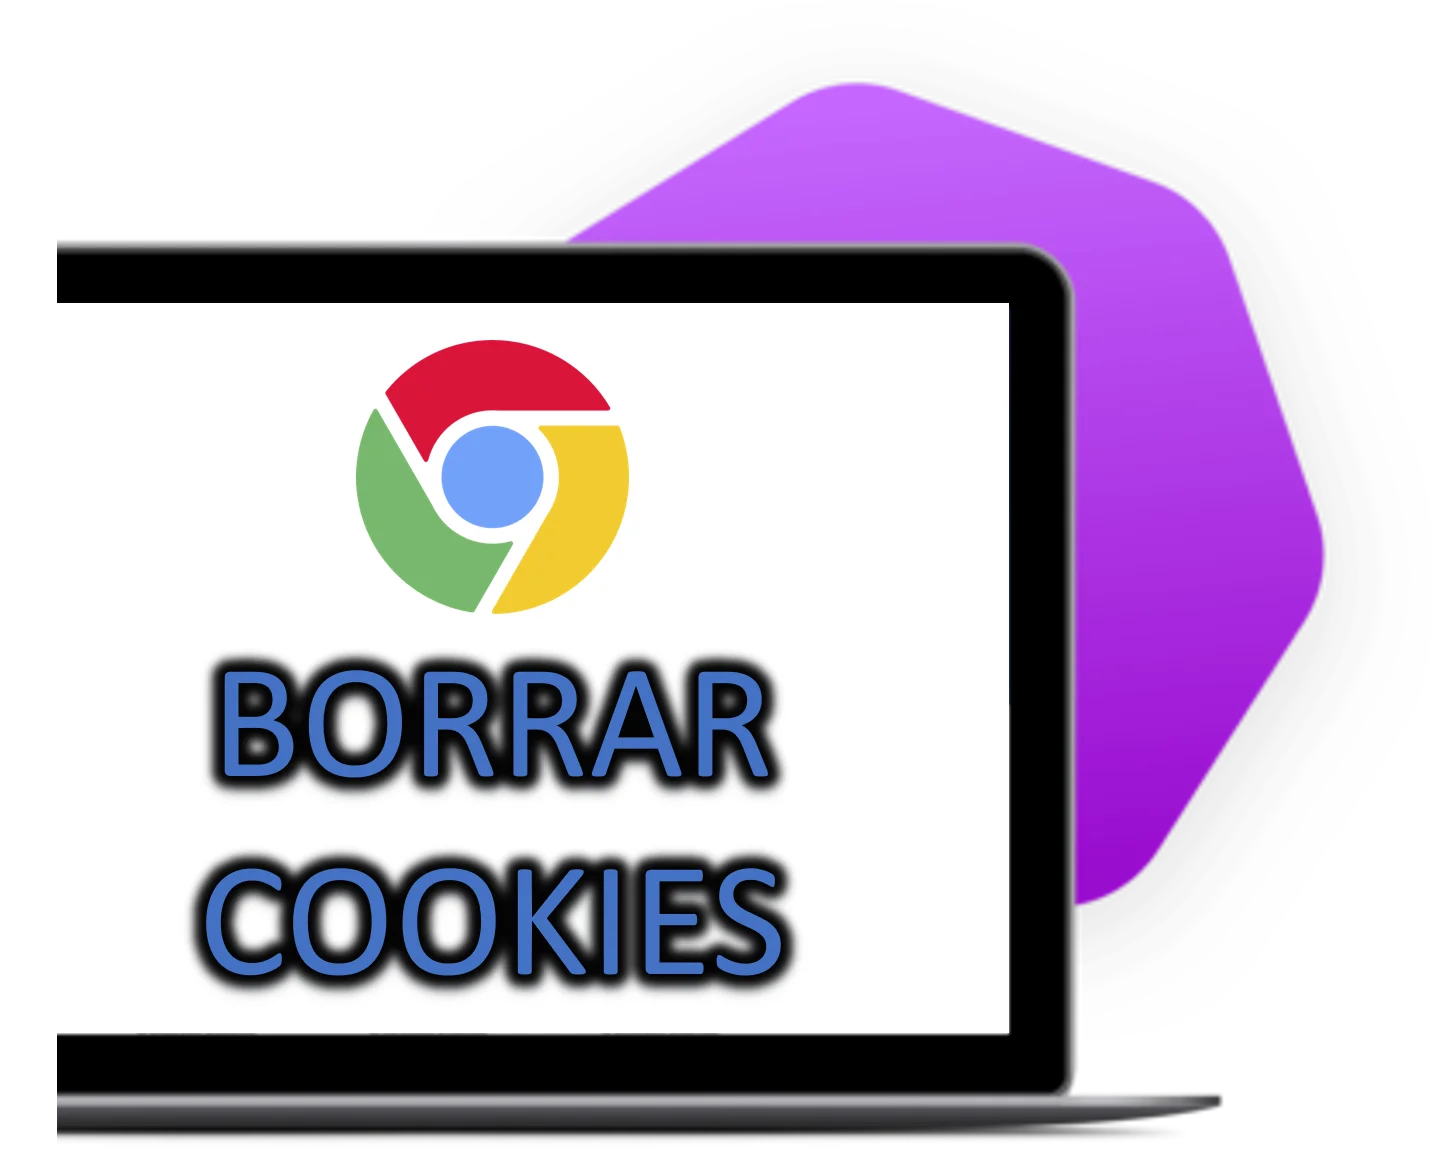 eliminar cookies en Google Chrome. Aprende cómo limpiar las cookies y mejorar tu privacidad en el navegador